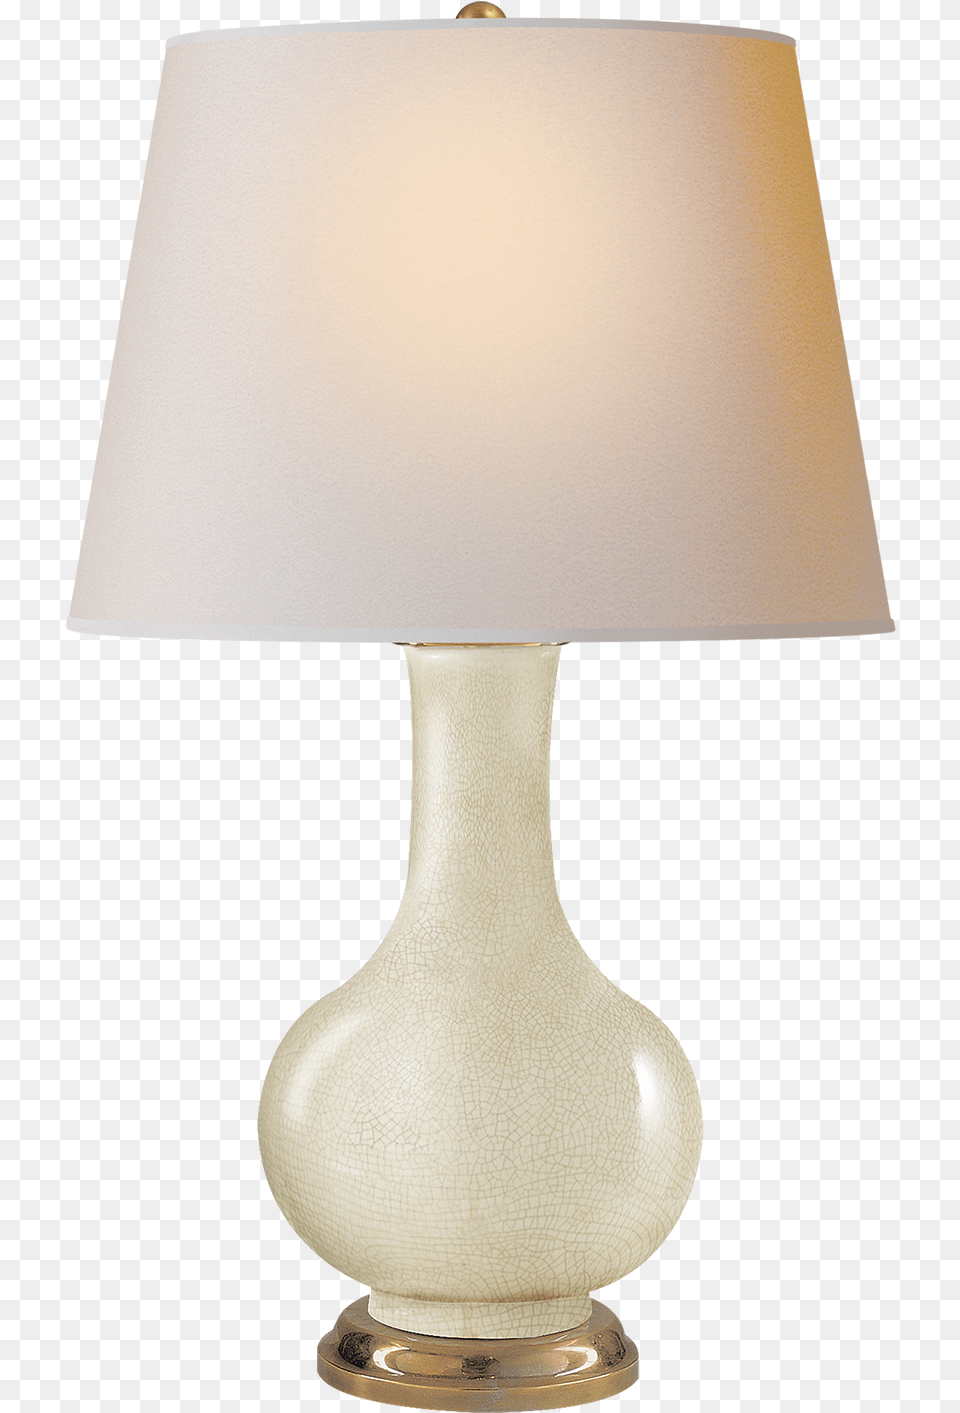 Visual Comfort, Lamp, Table Lamp, Lampshade Png Image